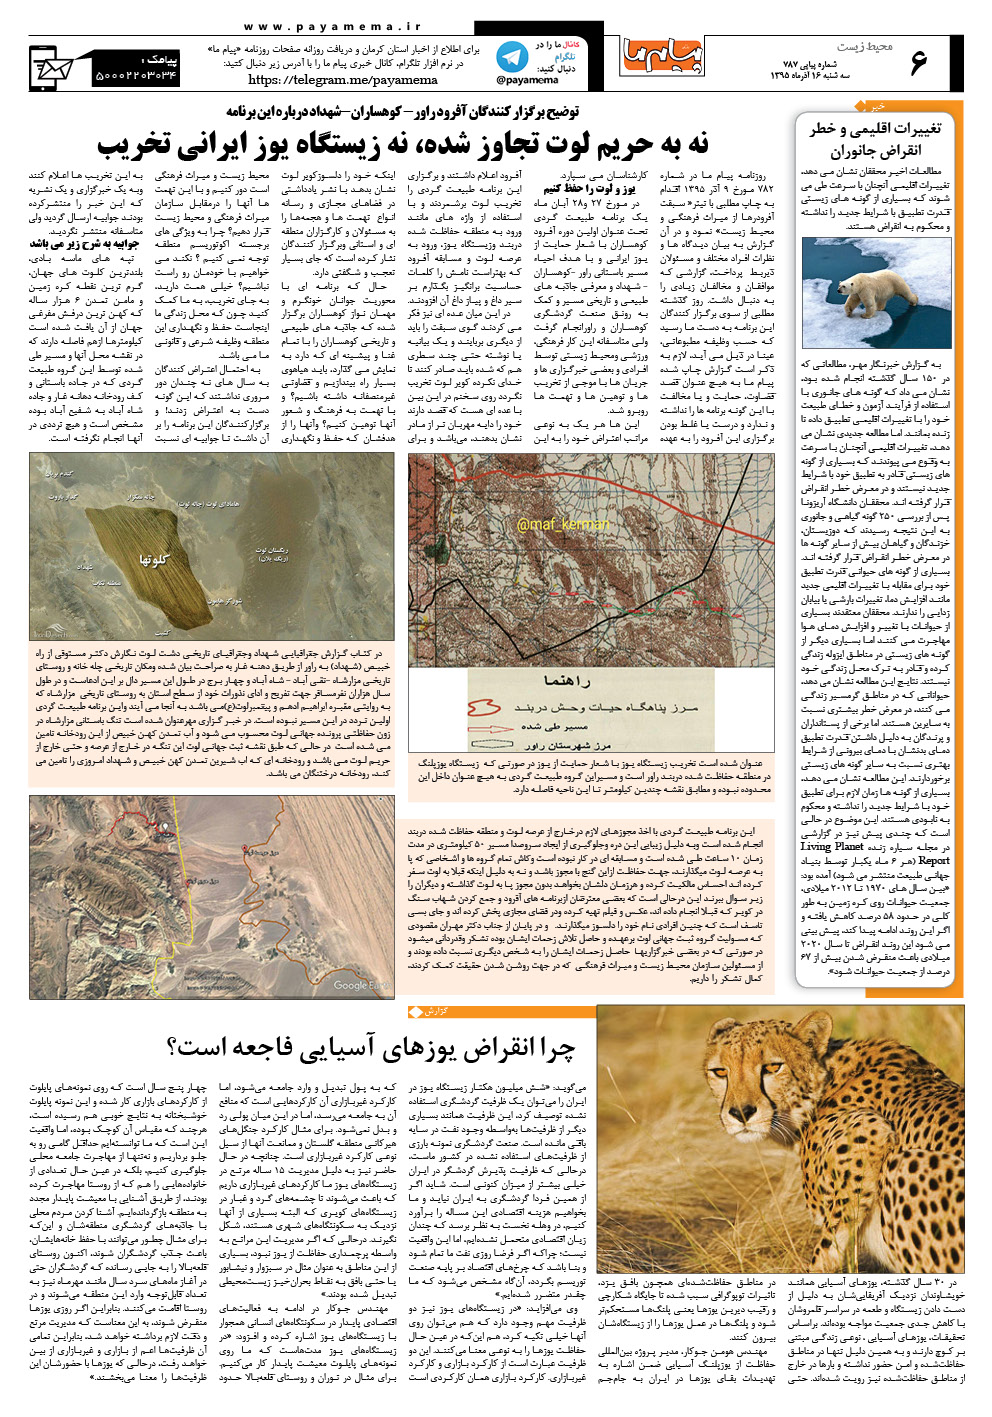 صفحه محیط زیست شماره 787 روزنامه پیام ما